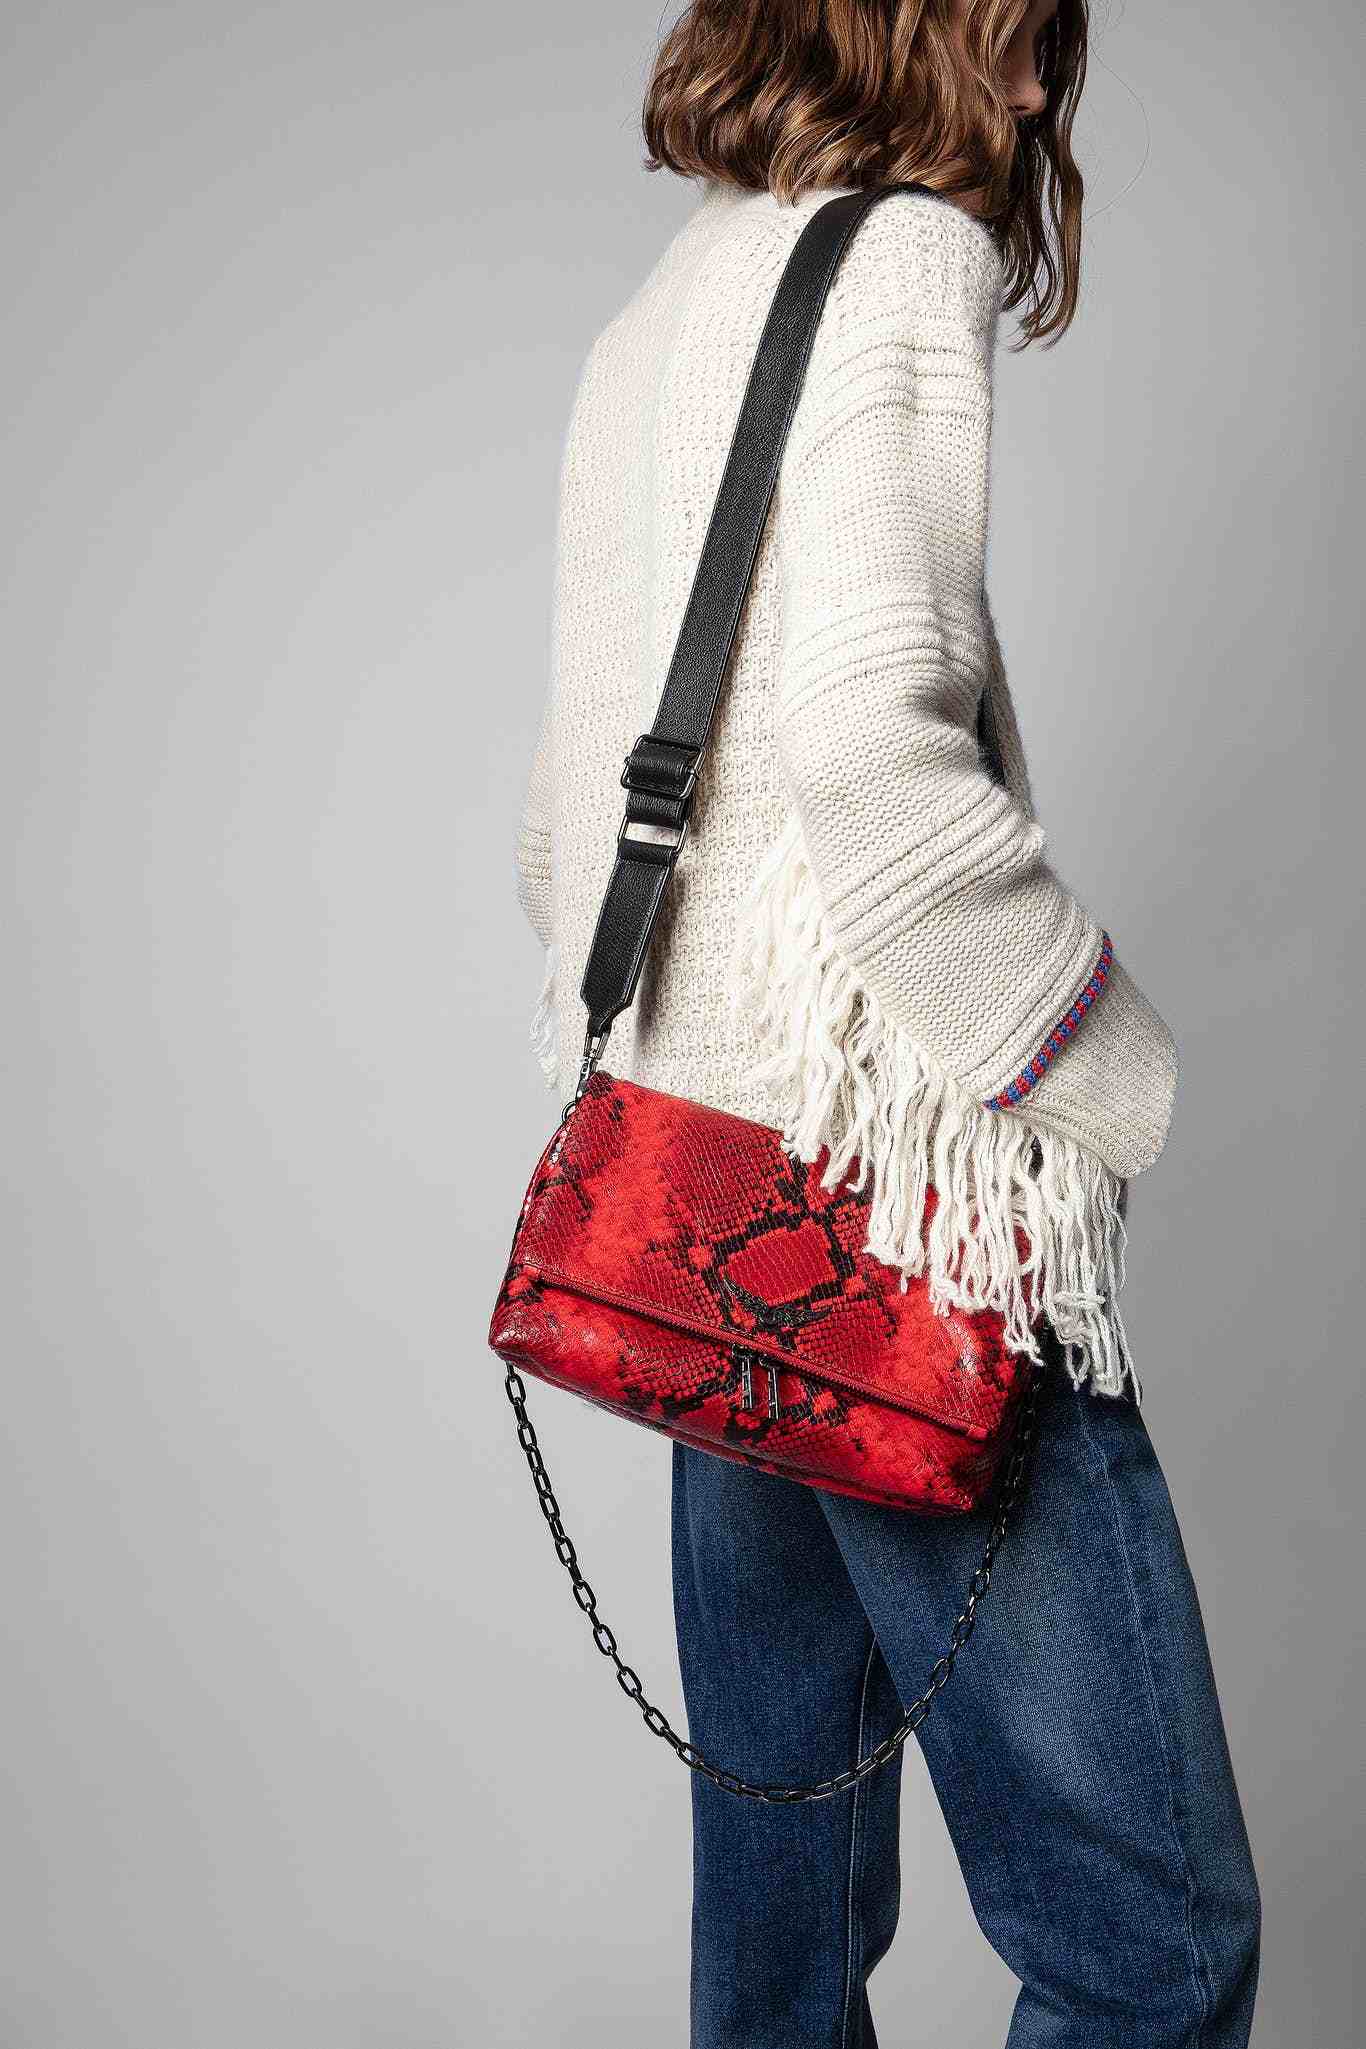 法国时装品牌Zadig Voltaire包包——自由、自我和思考